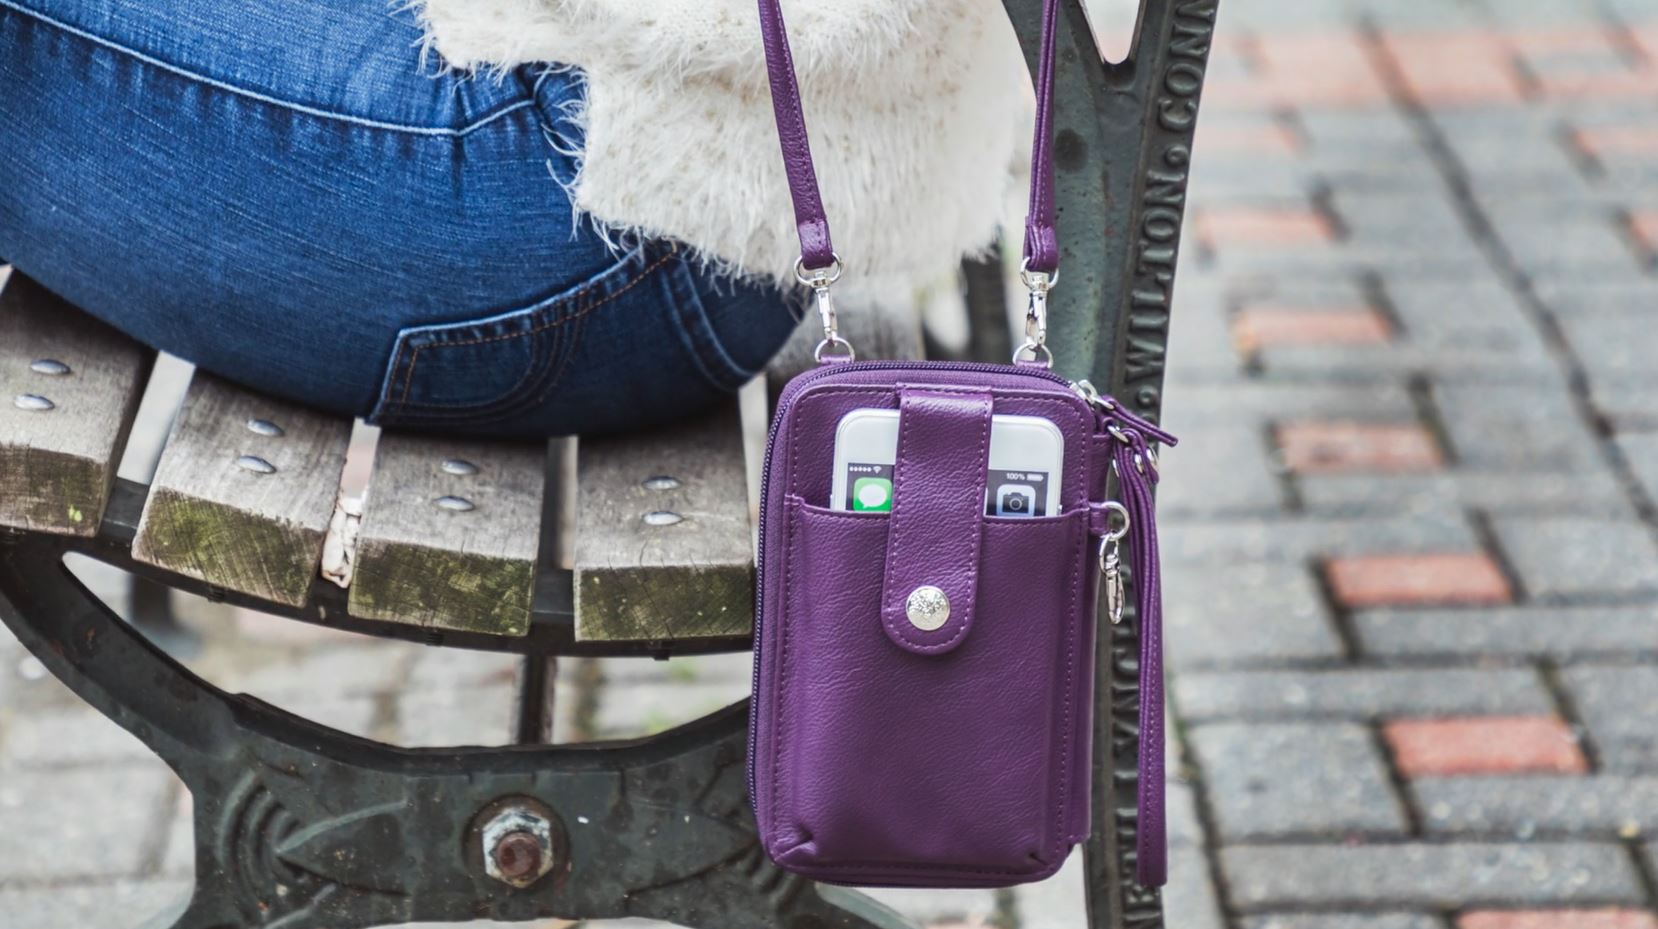 크로스바디 백 Mundi RFID Crossbody Bag For Women Anti Theft Travel Purse Handbag Wallet Purse Vegan 미국출고-560233